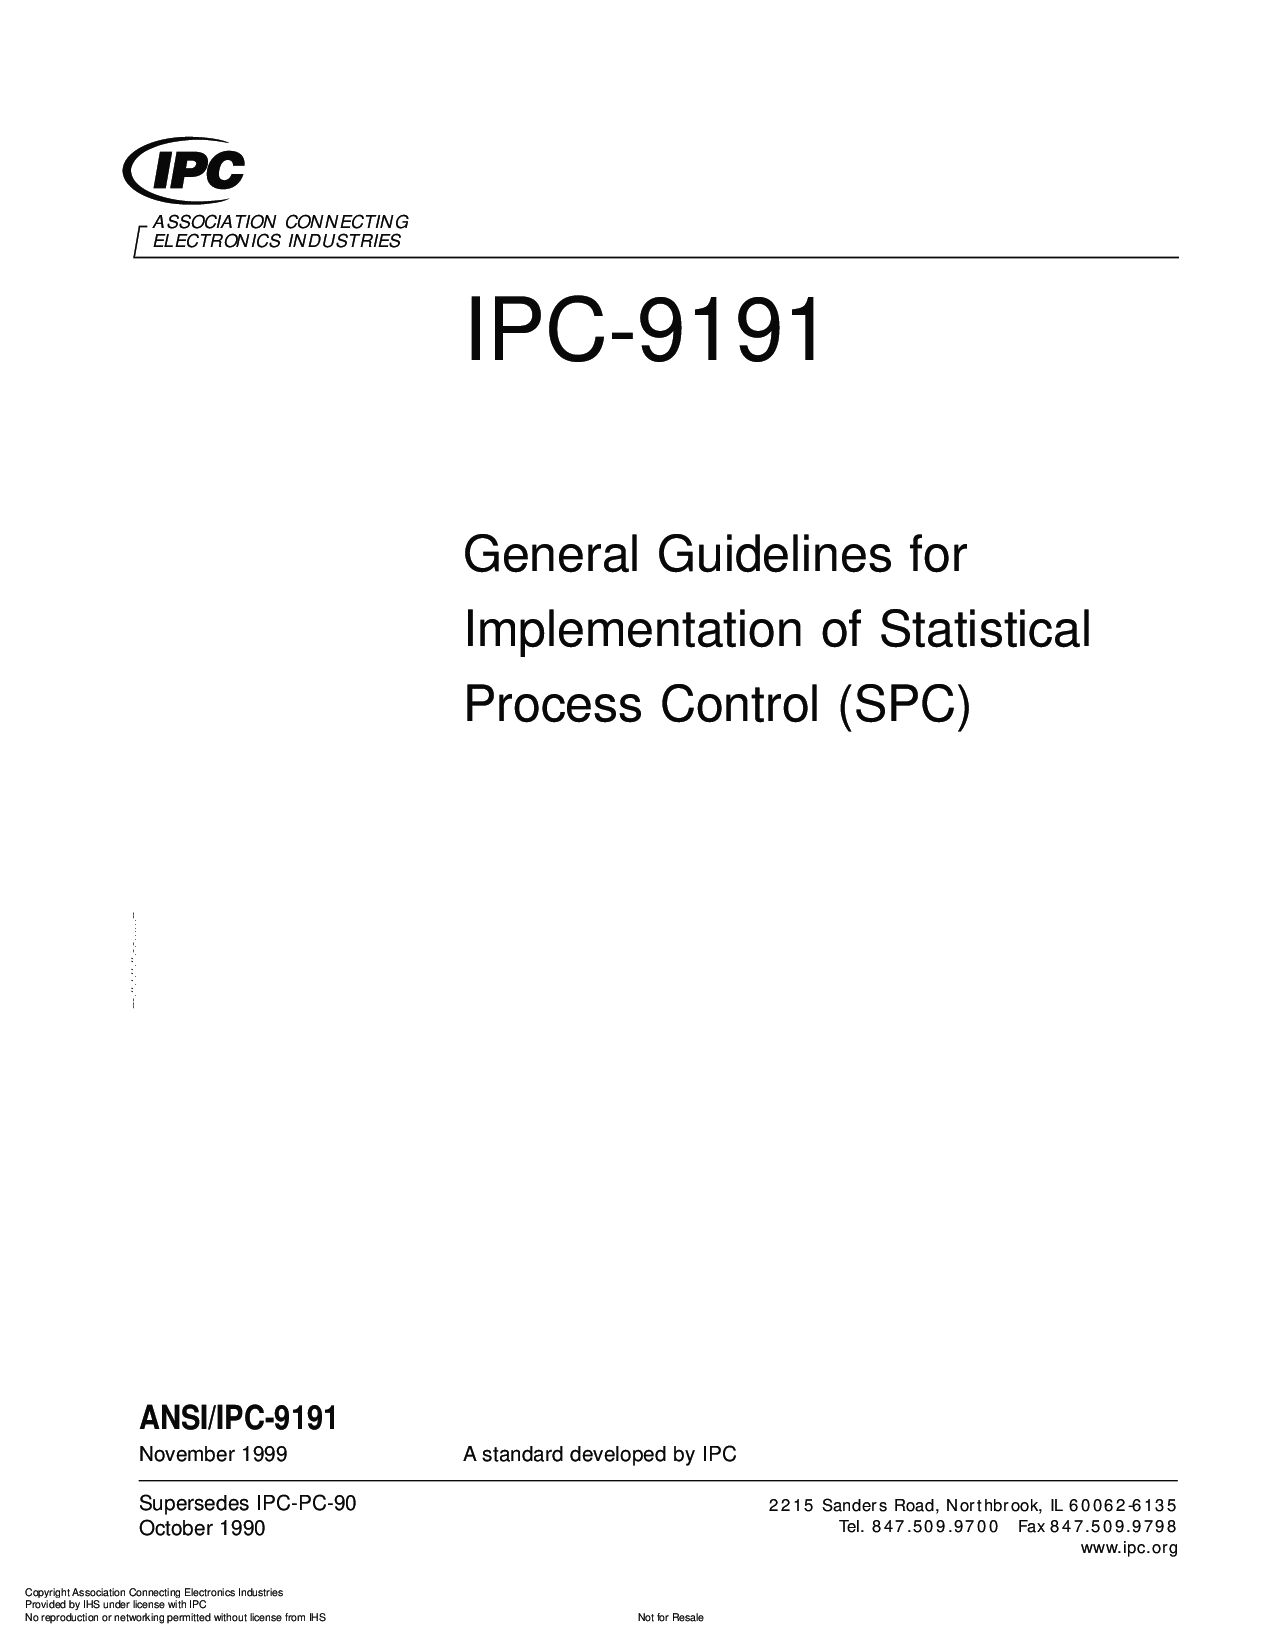 IPC 9191-1999